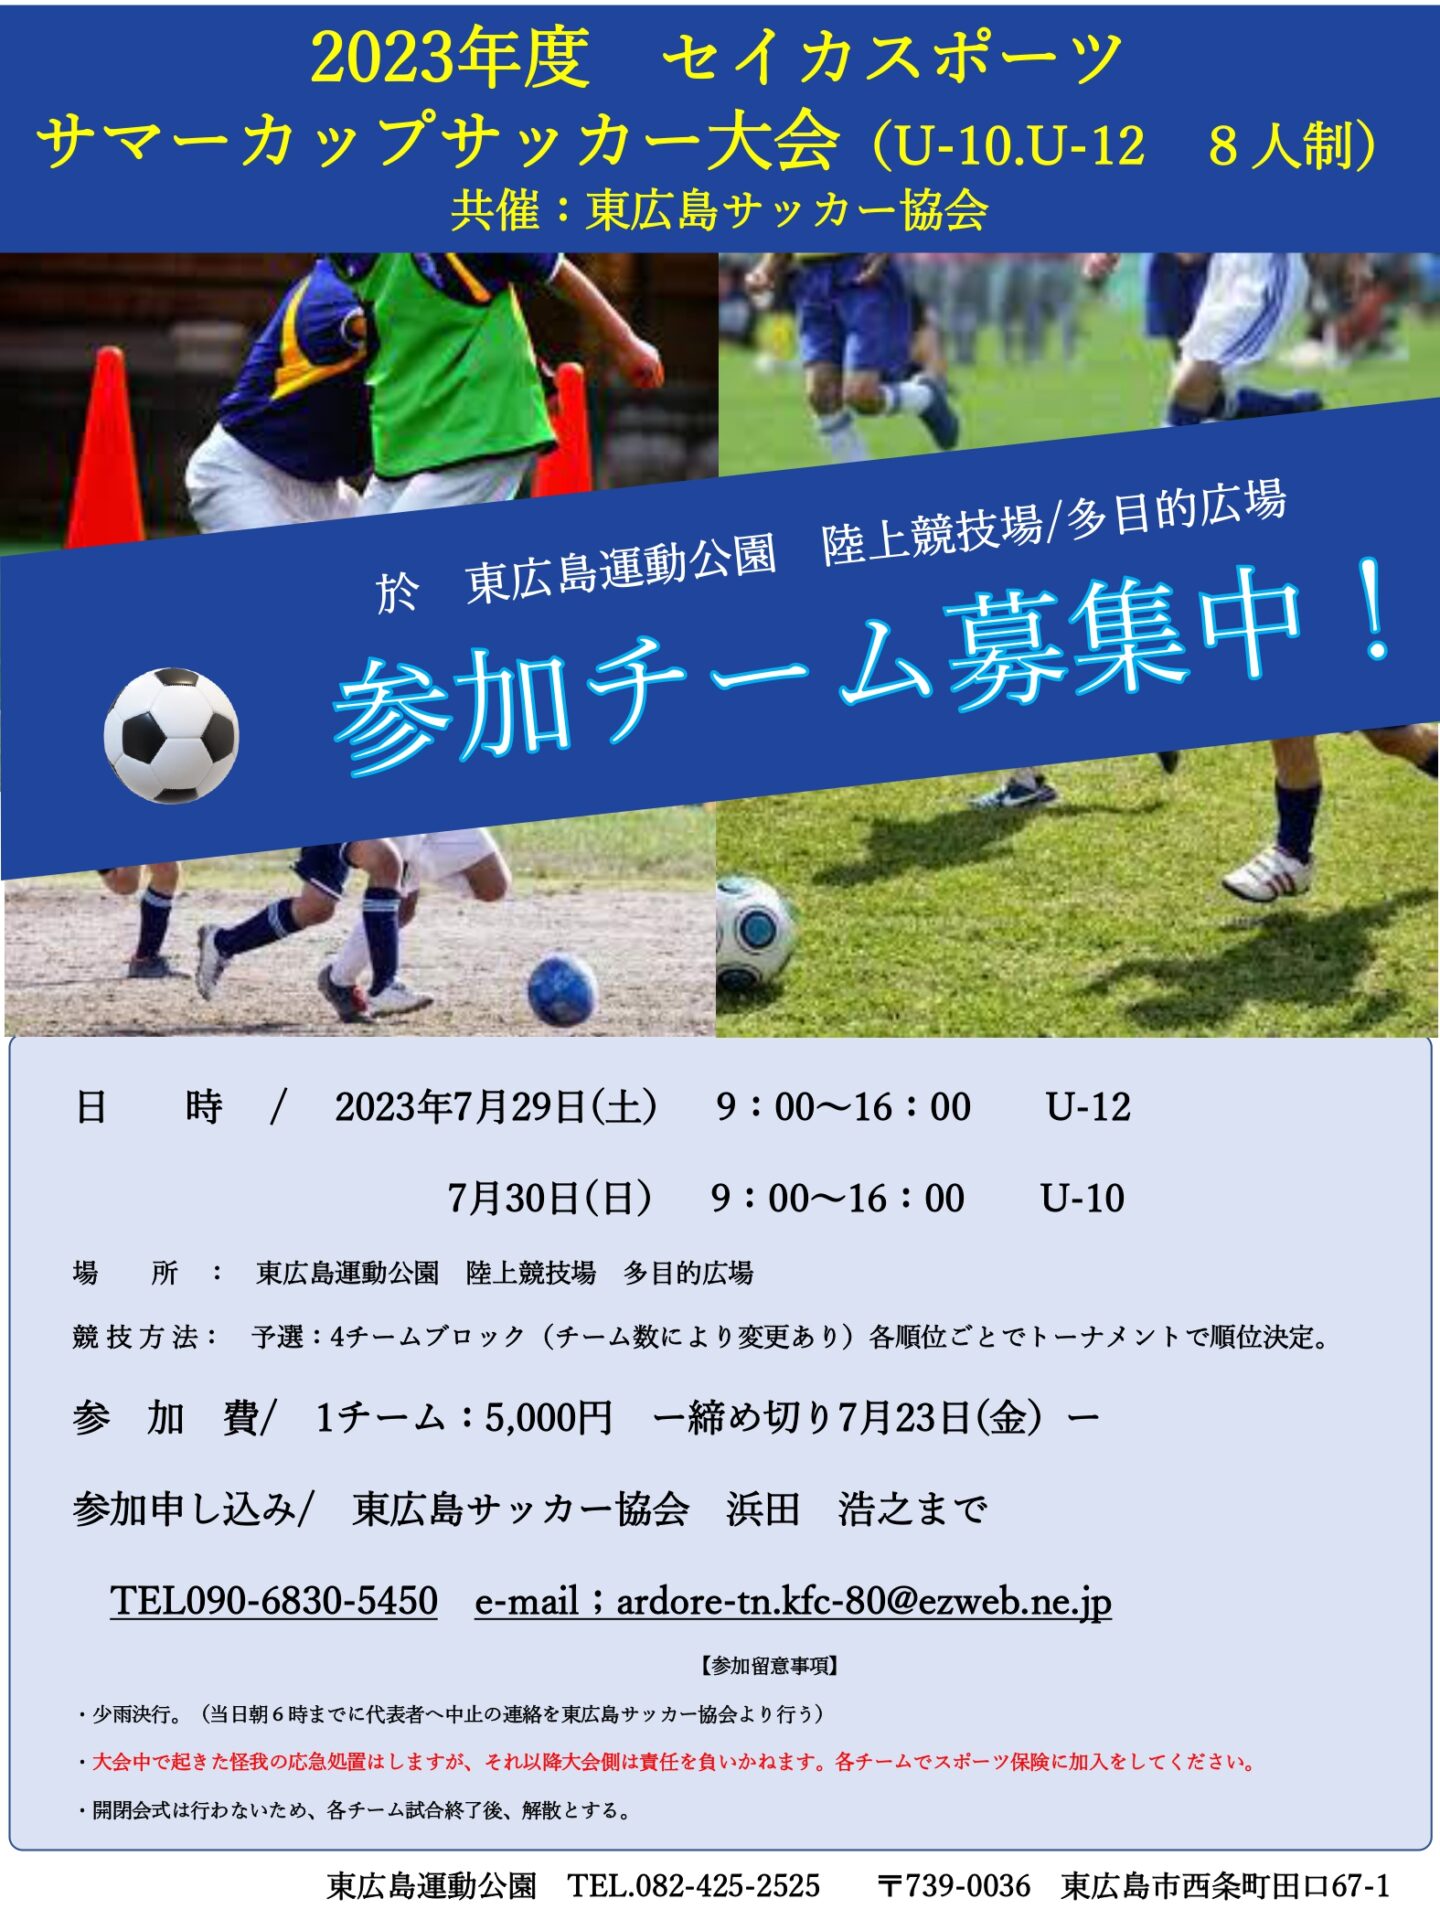 セイカスポーツサマーカップサッカー大会（U-10 ,U-12)